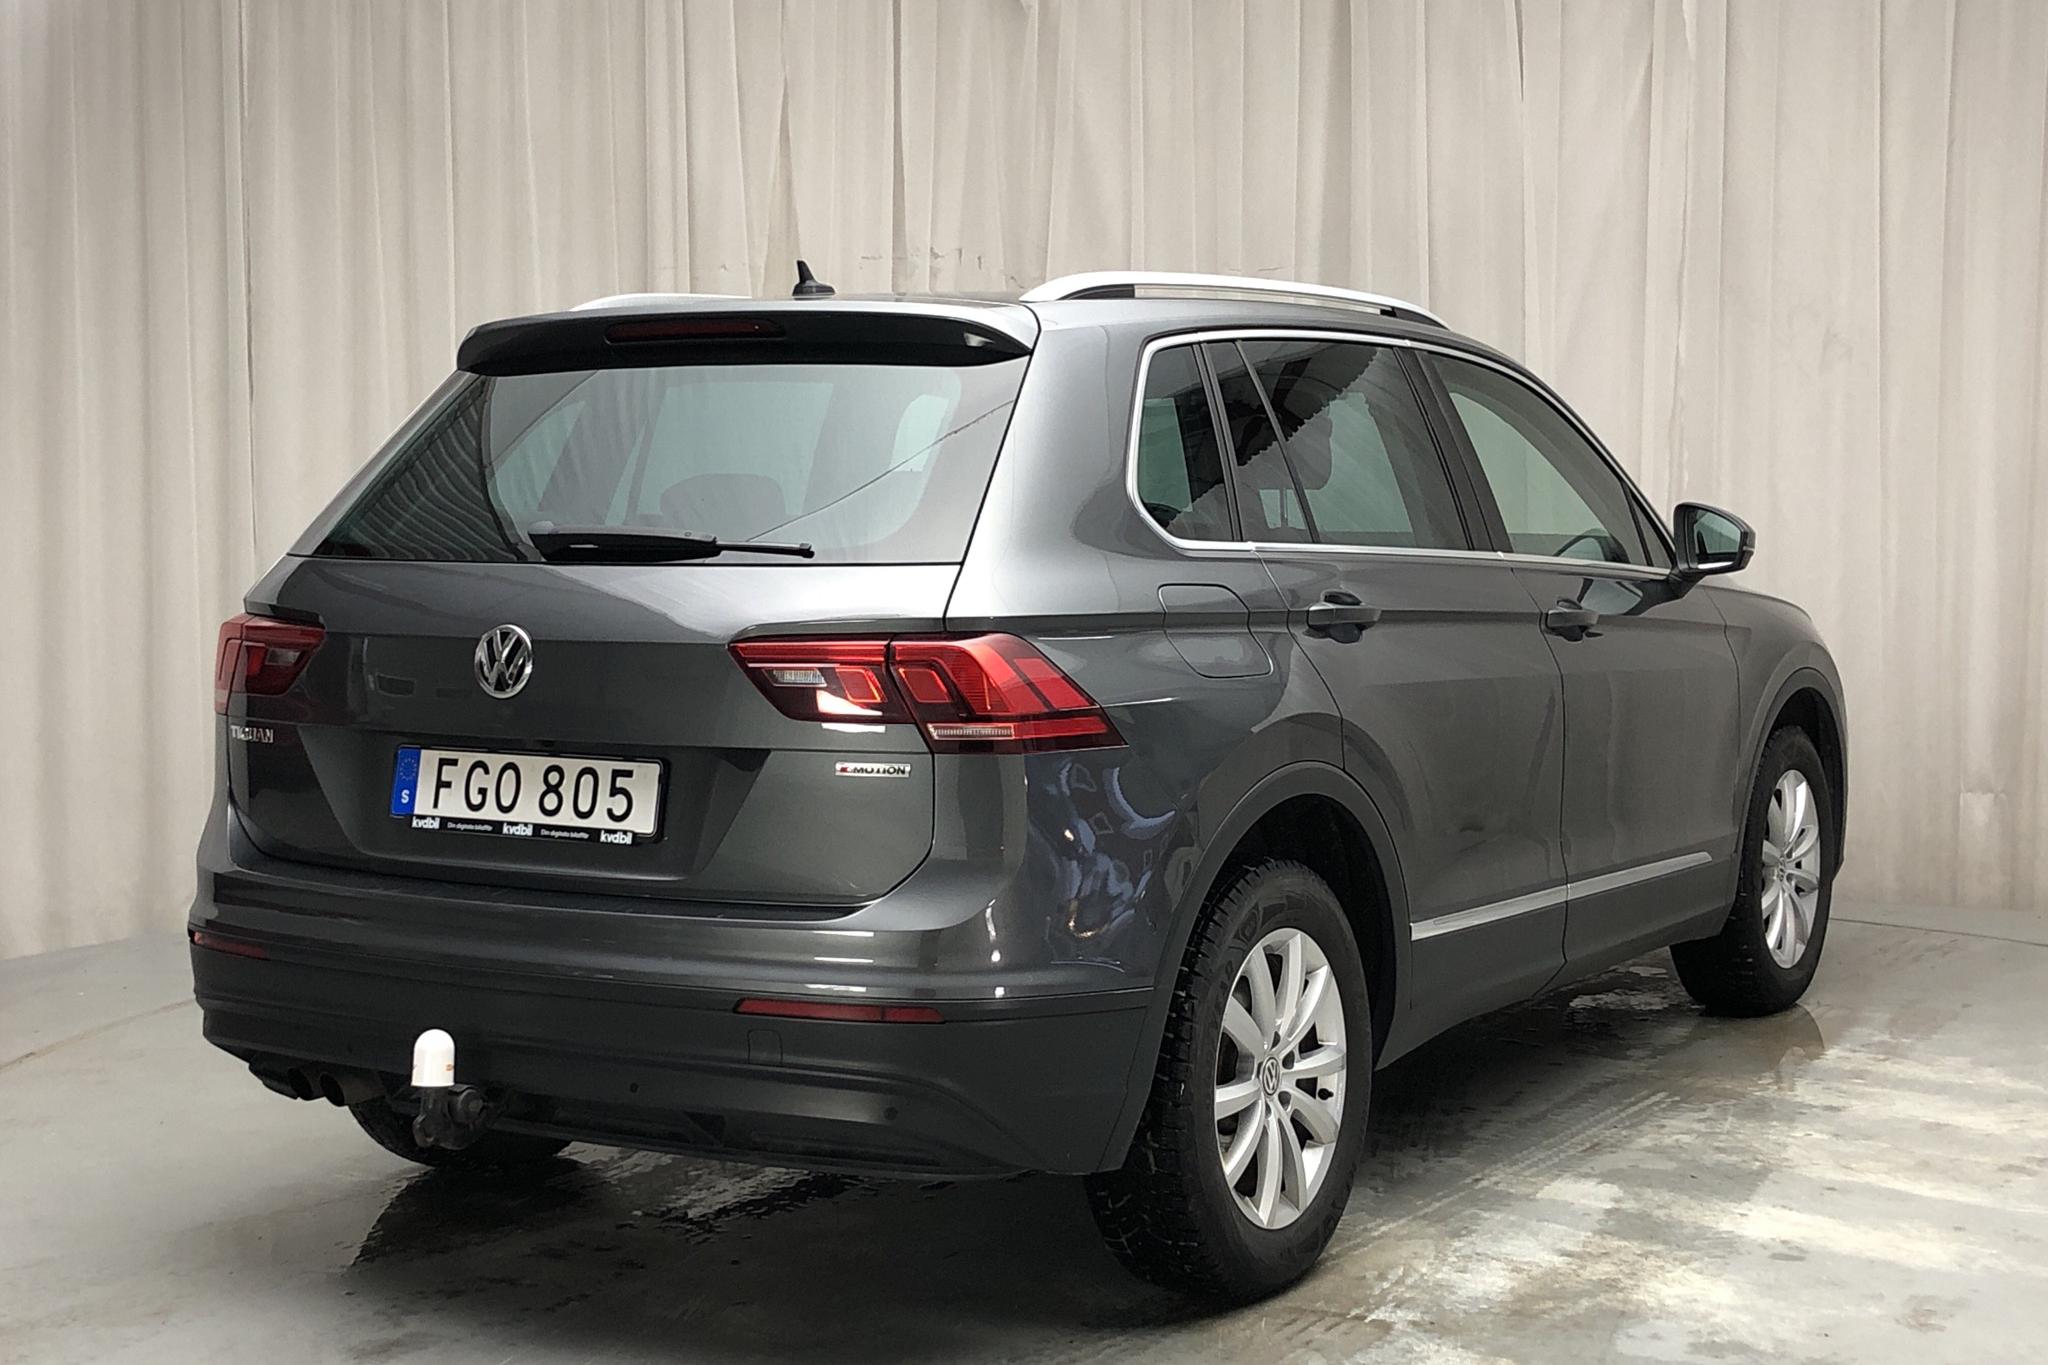 VW Tiguan 1.4 TSI 4MOTION (150hk) - 8 121 mil - Automat - silver - 2018